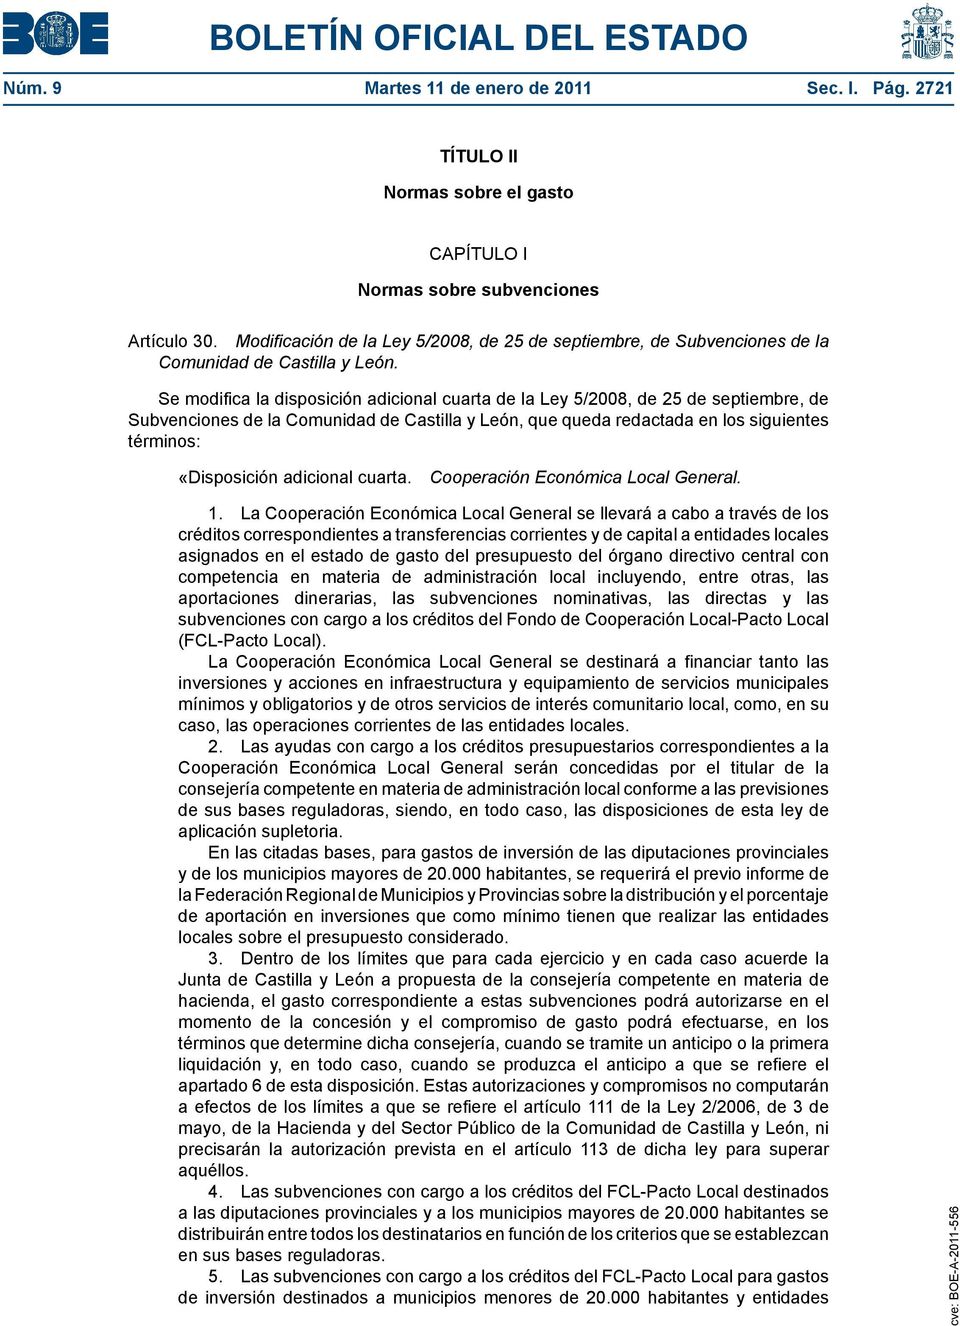 Se modifica la disposición adicional cuarta de la Ley 5/2008, de 25 de septiembre, de Subvenciones de la Comunidad de Castilla y León, que queda redactada en los siguientes términos: «Disposición